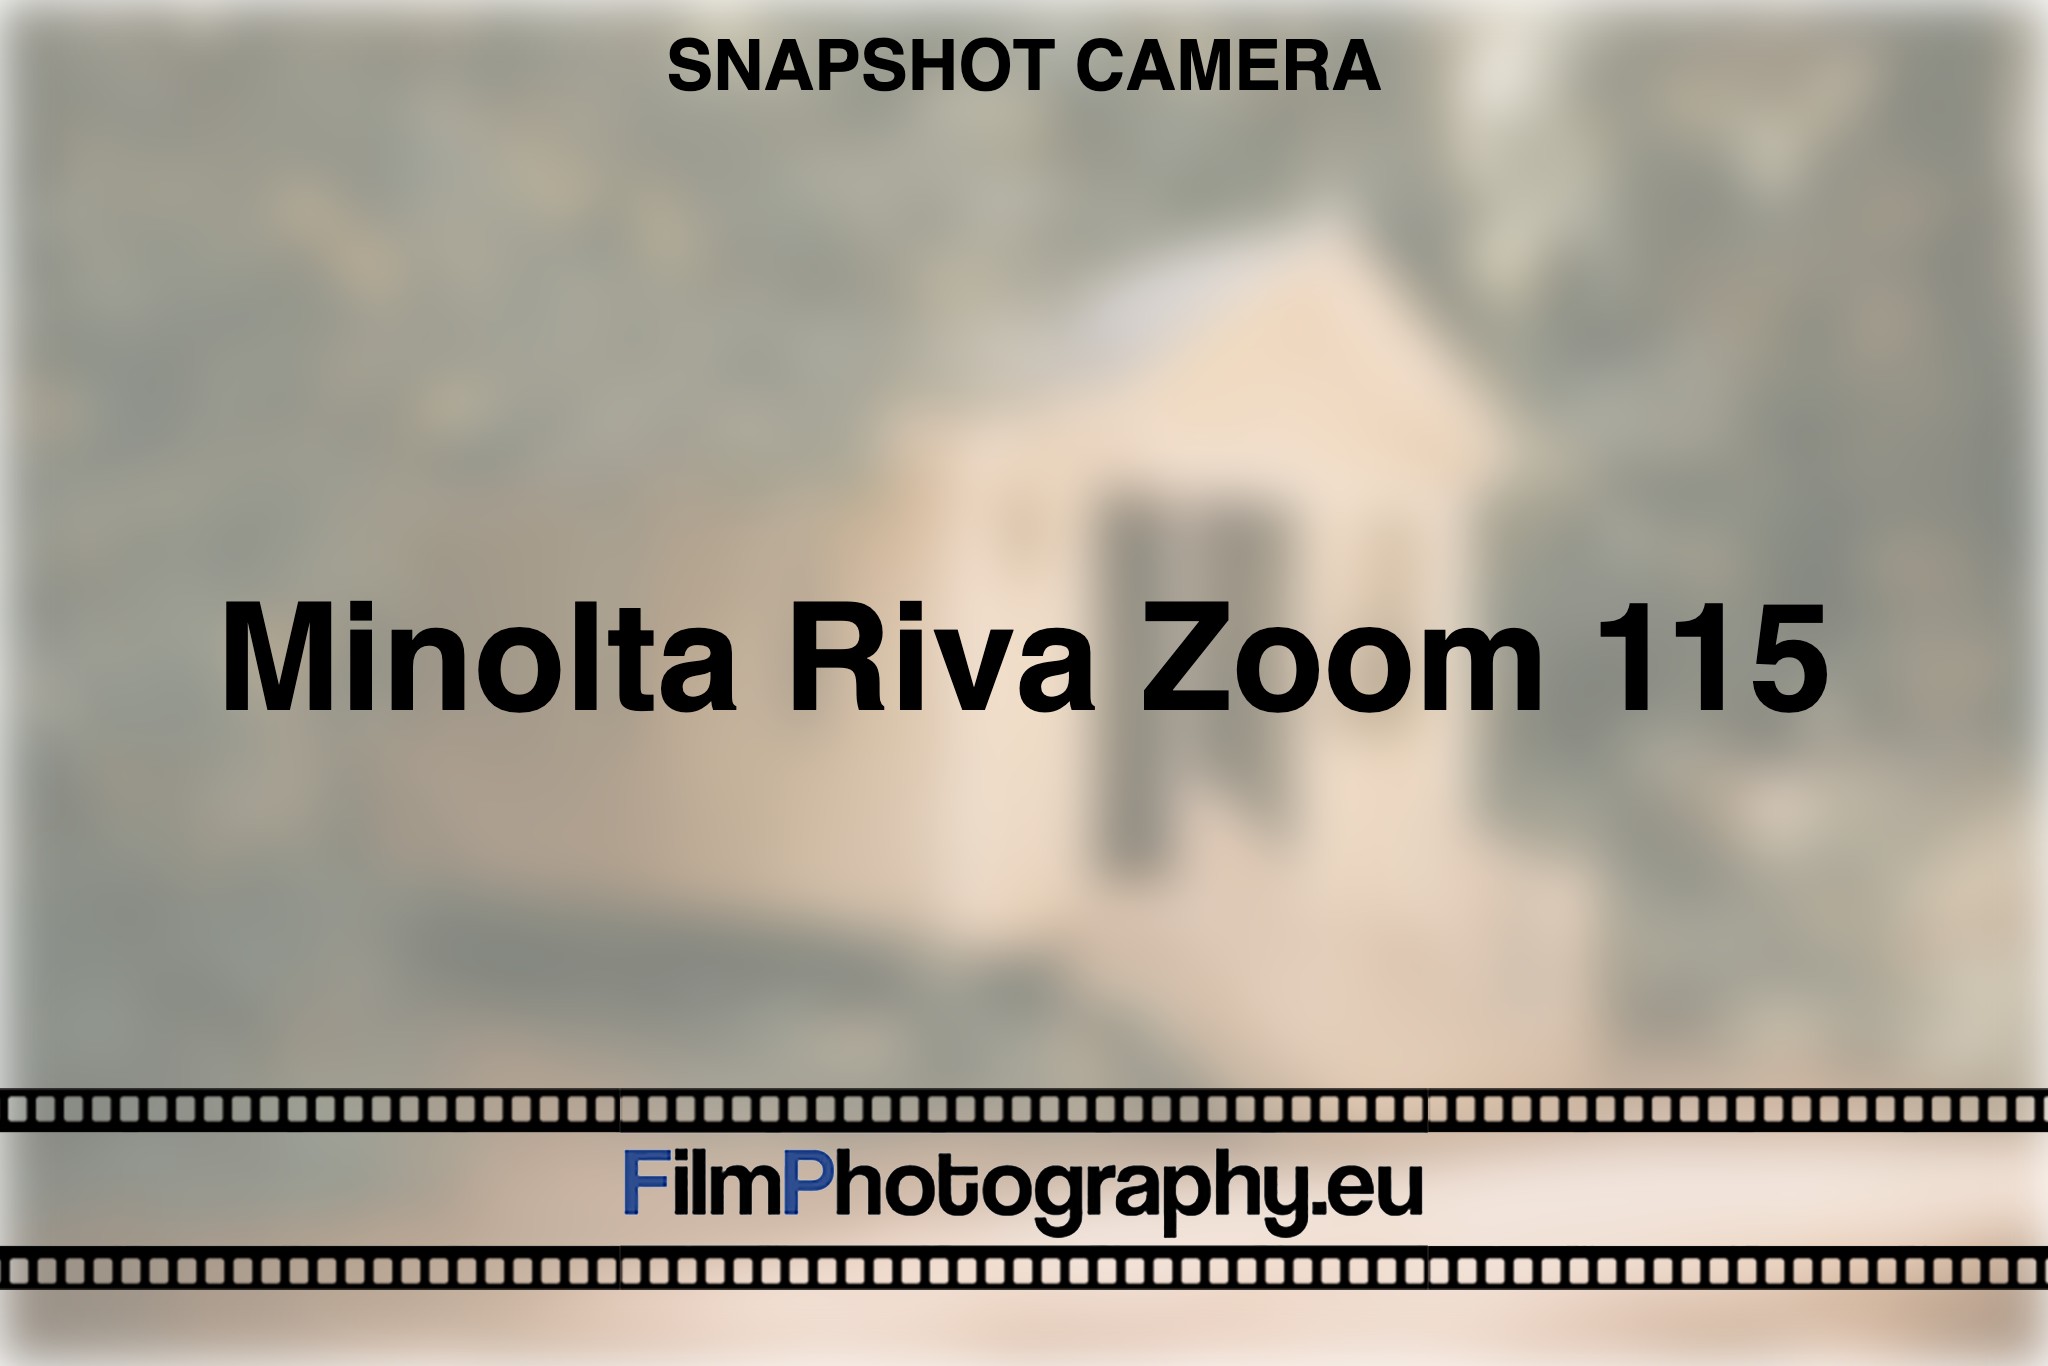 minolta-riva-zoom-115-snapshot-camera-bnv